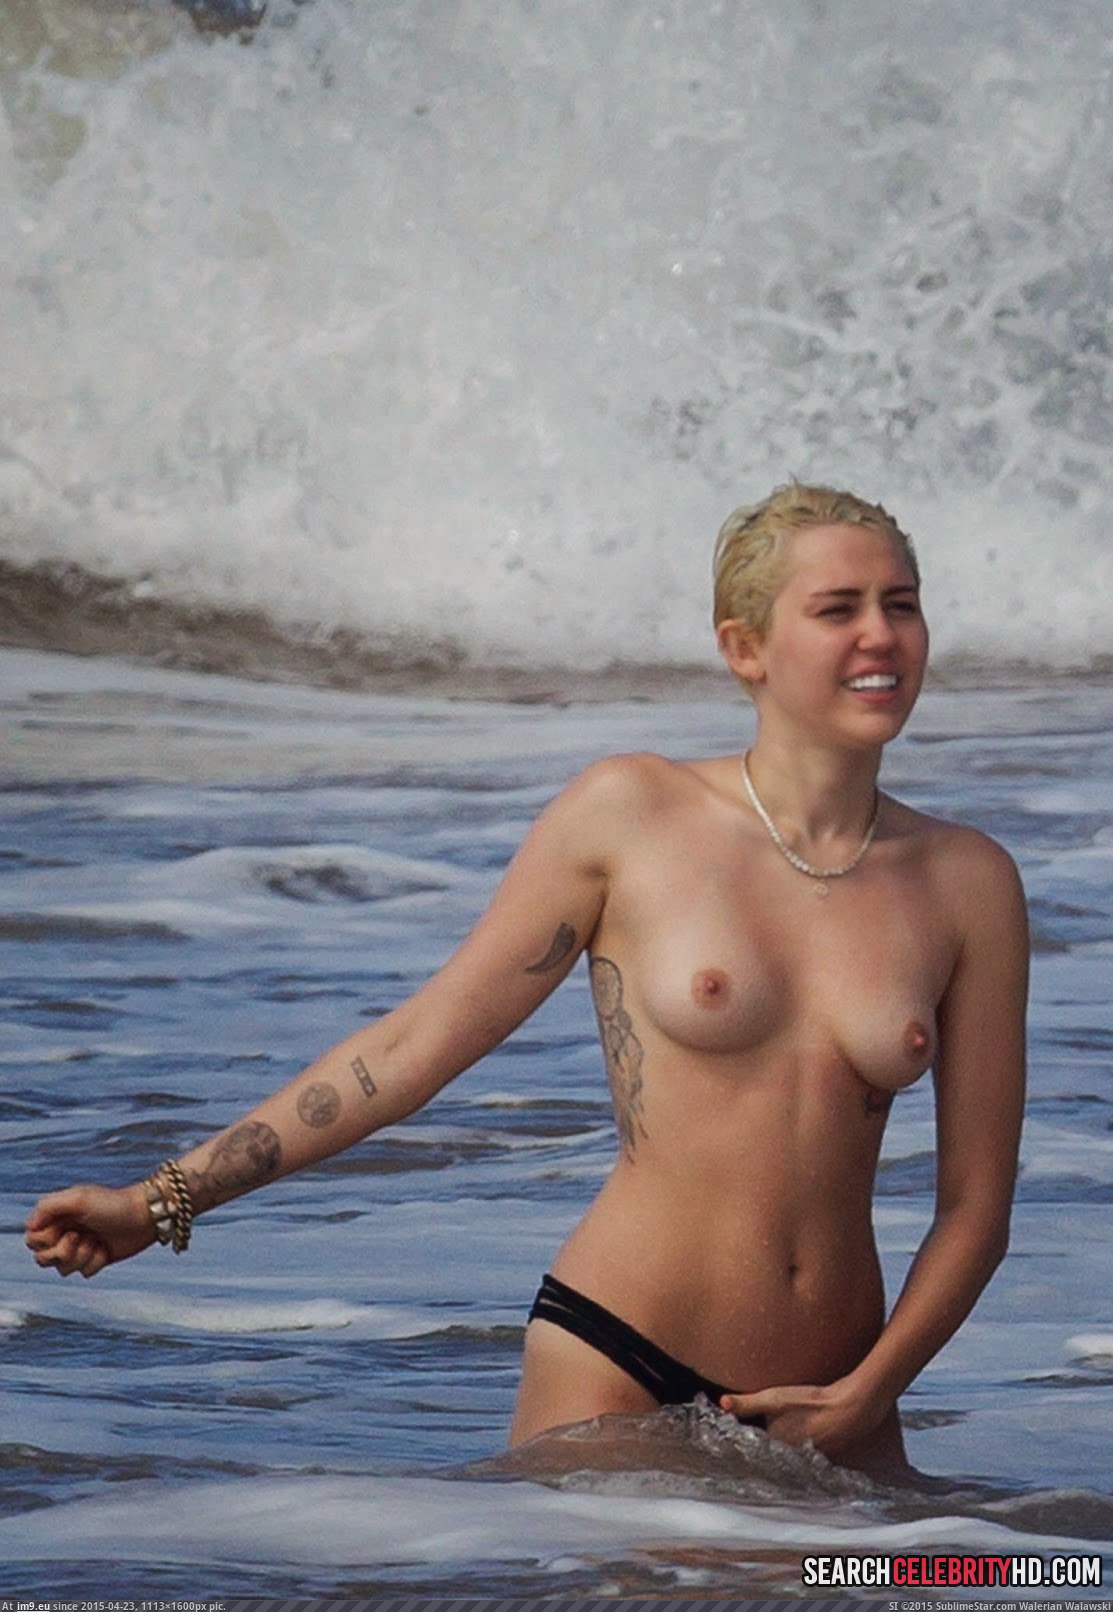 Miley Cyrus Topless Bikini Candid Photos In Hawaii (13) (in Miley Cyrus Topless Bikini Candid Photos In Hawaii)